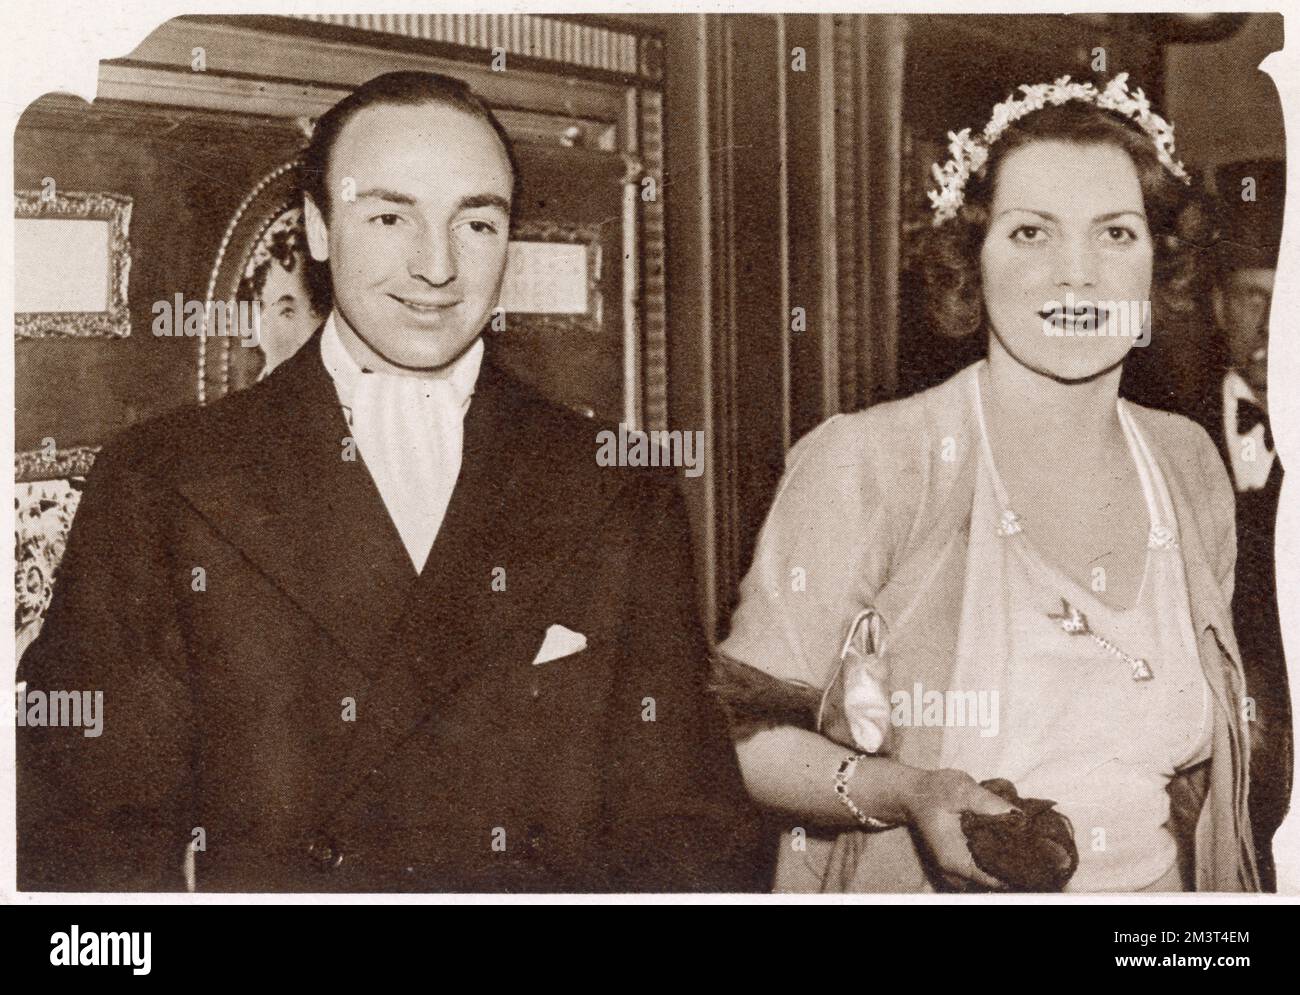 John 'Jack' profumo fotografato in compagnia di Miss Diana Mills alla prima di Charlie Chaplin 'Modern Times'. Foto Stock